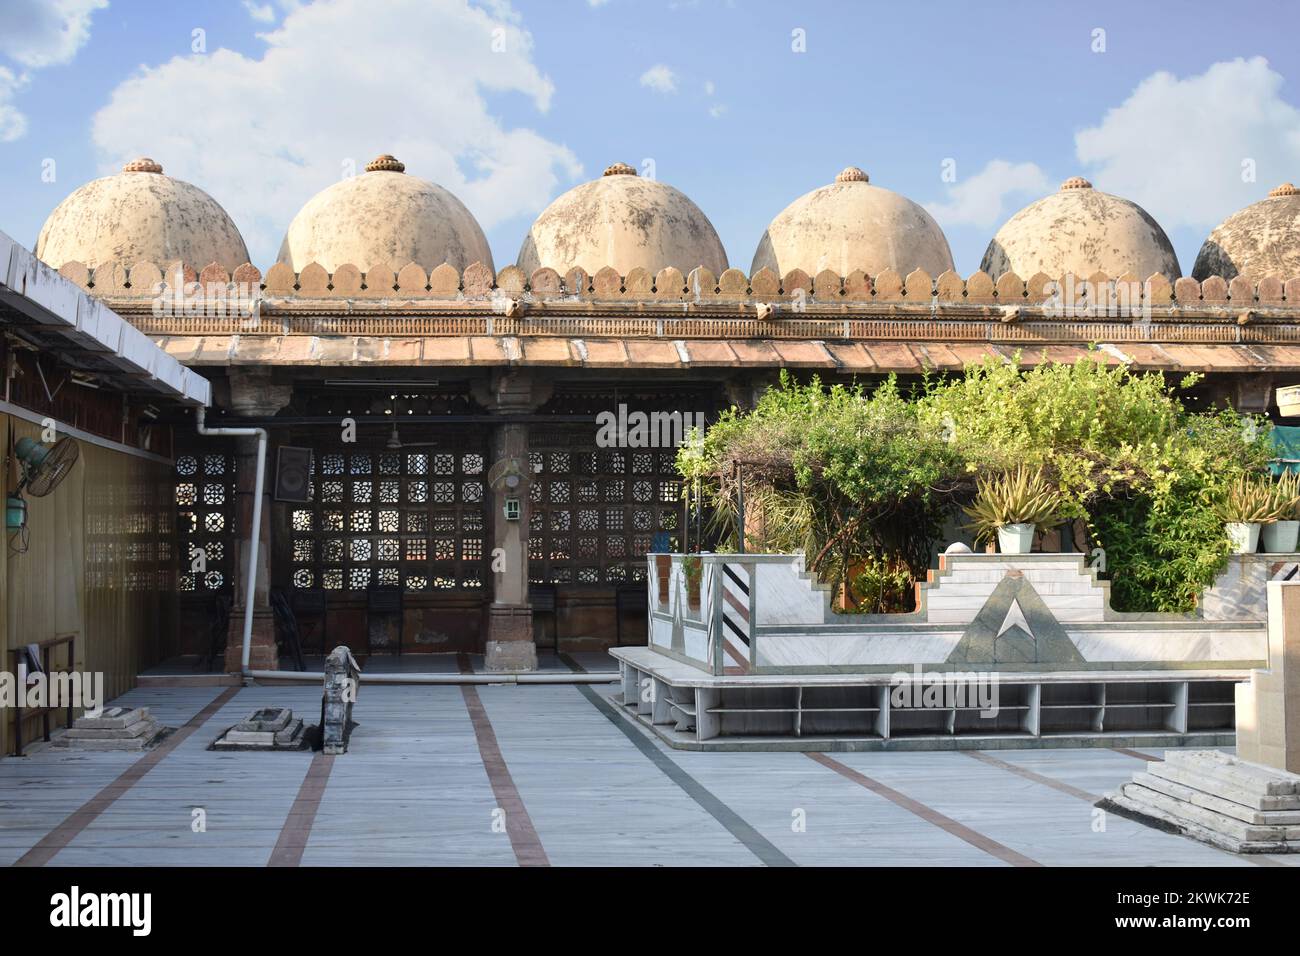 Der architektonische Korridor von Pattharwali Masjid mit komplexen Schnitzereien in Stein, ein islamisches Denkmal, in der Nähe von Dhal Ni pol, wurde vom Sohn des Nizam erbaut Stockfoto